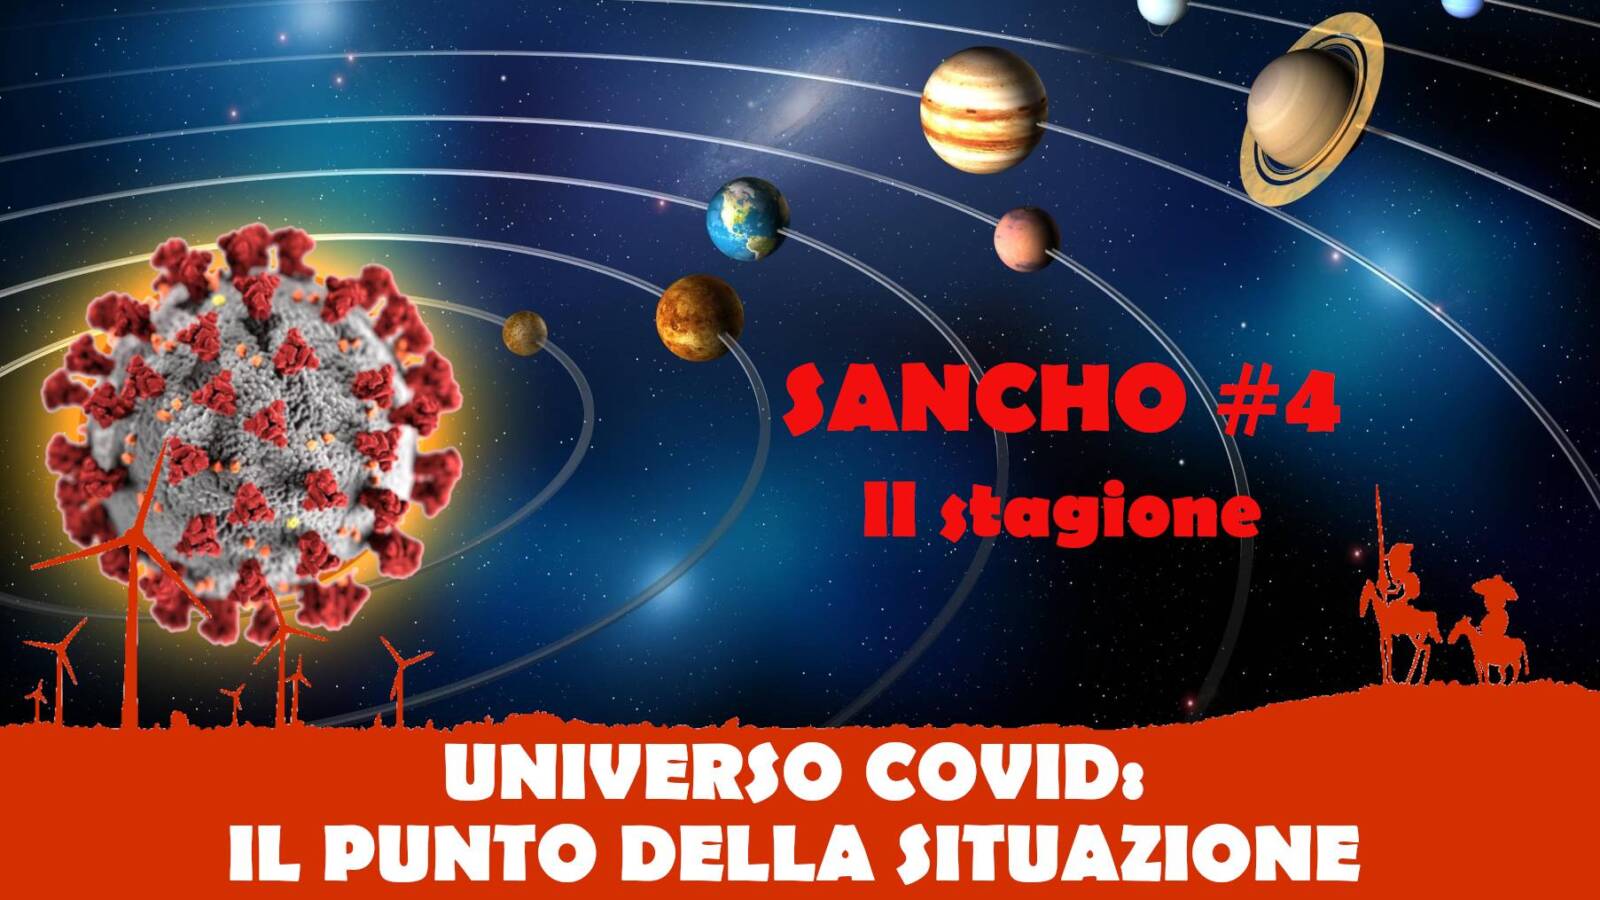 Sancho #4 II stagione – Fulvio Grimaldi – UNIVERSO COVID: IL PUNTO DELLA SITUAZIONE